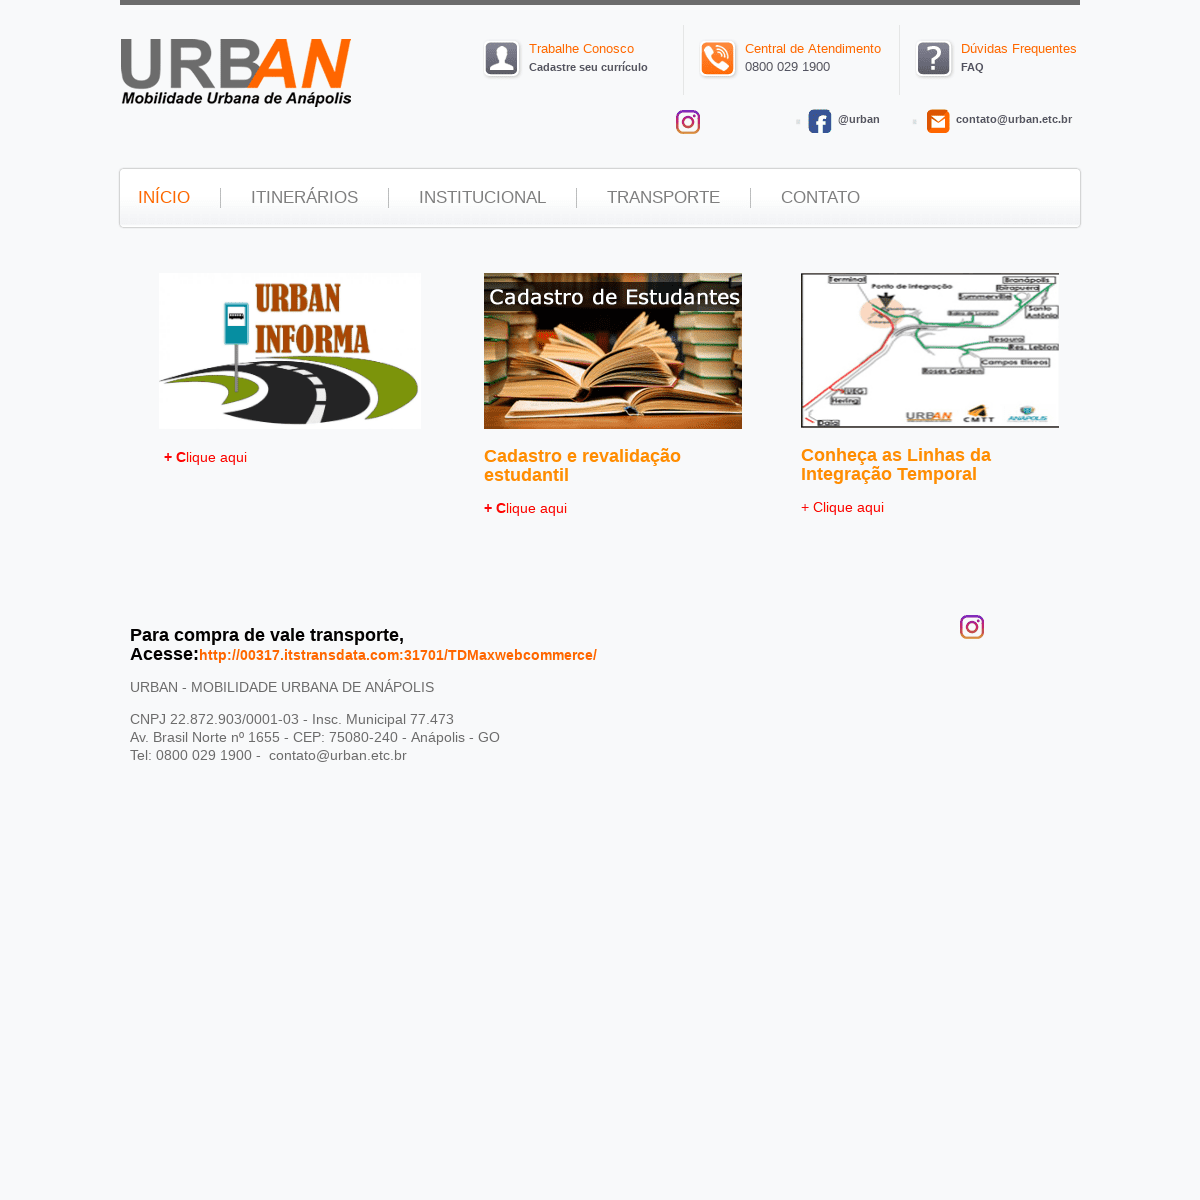 URBAN - Mobilidade Urbana Anápolis